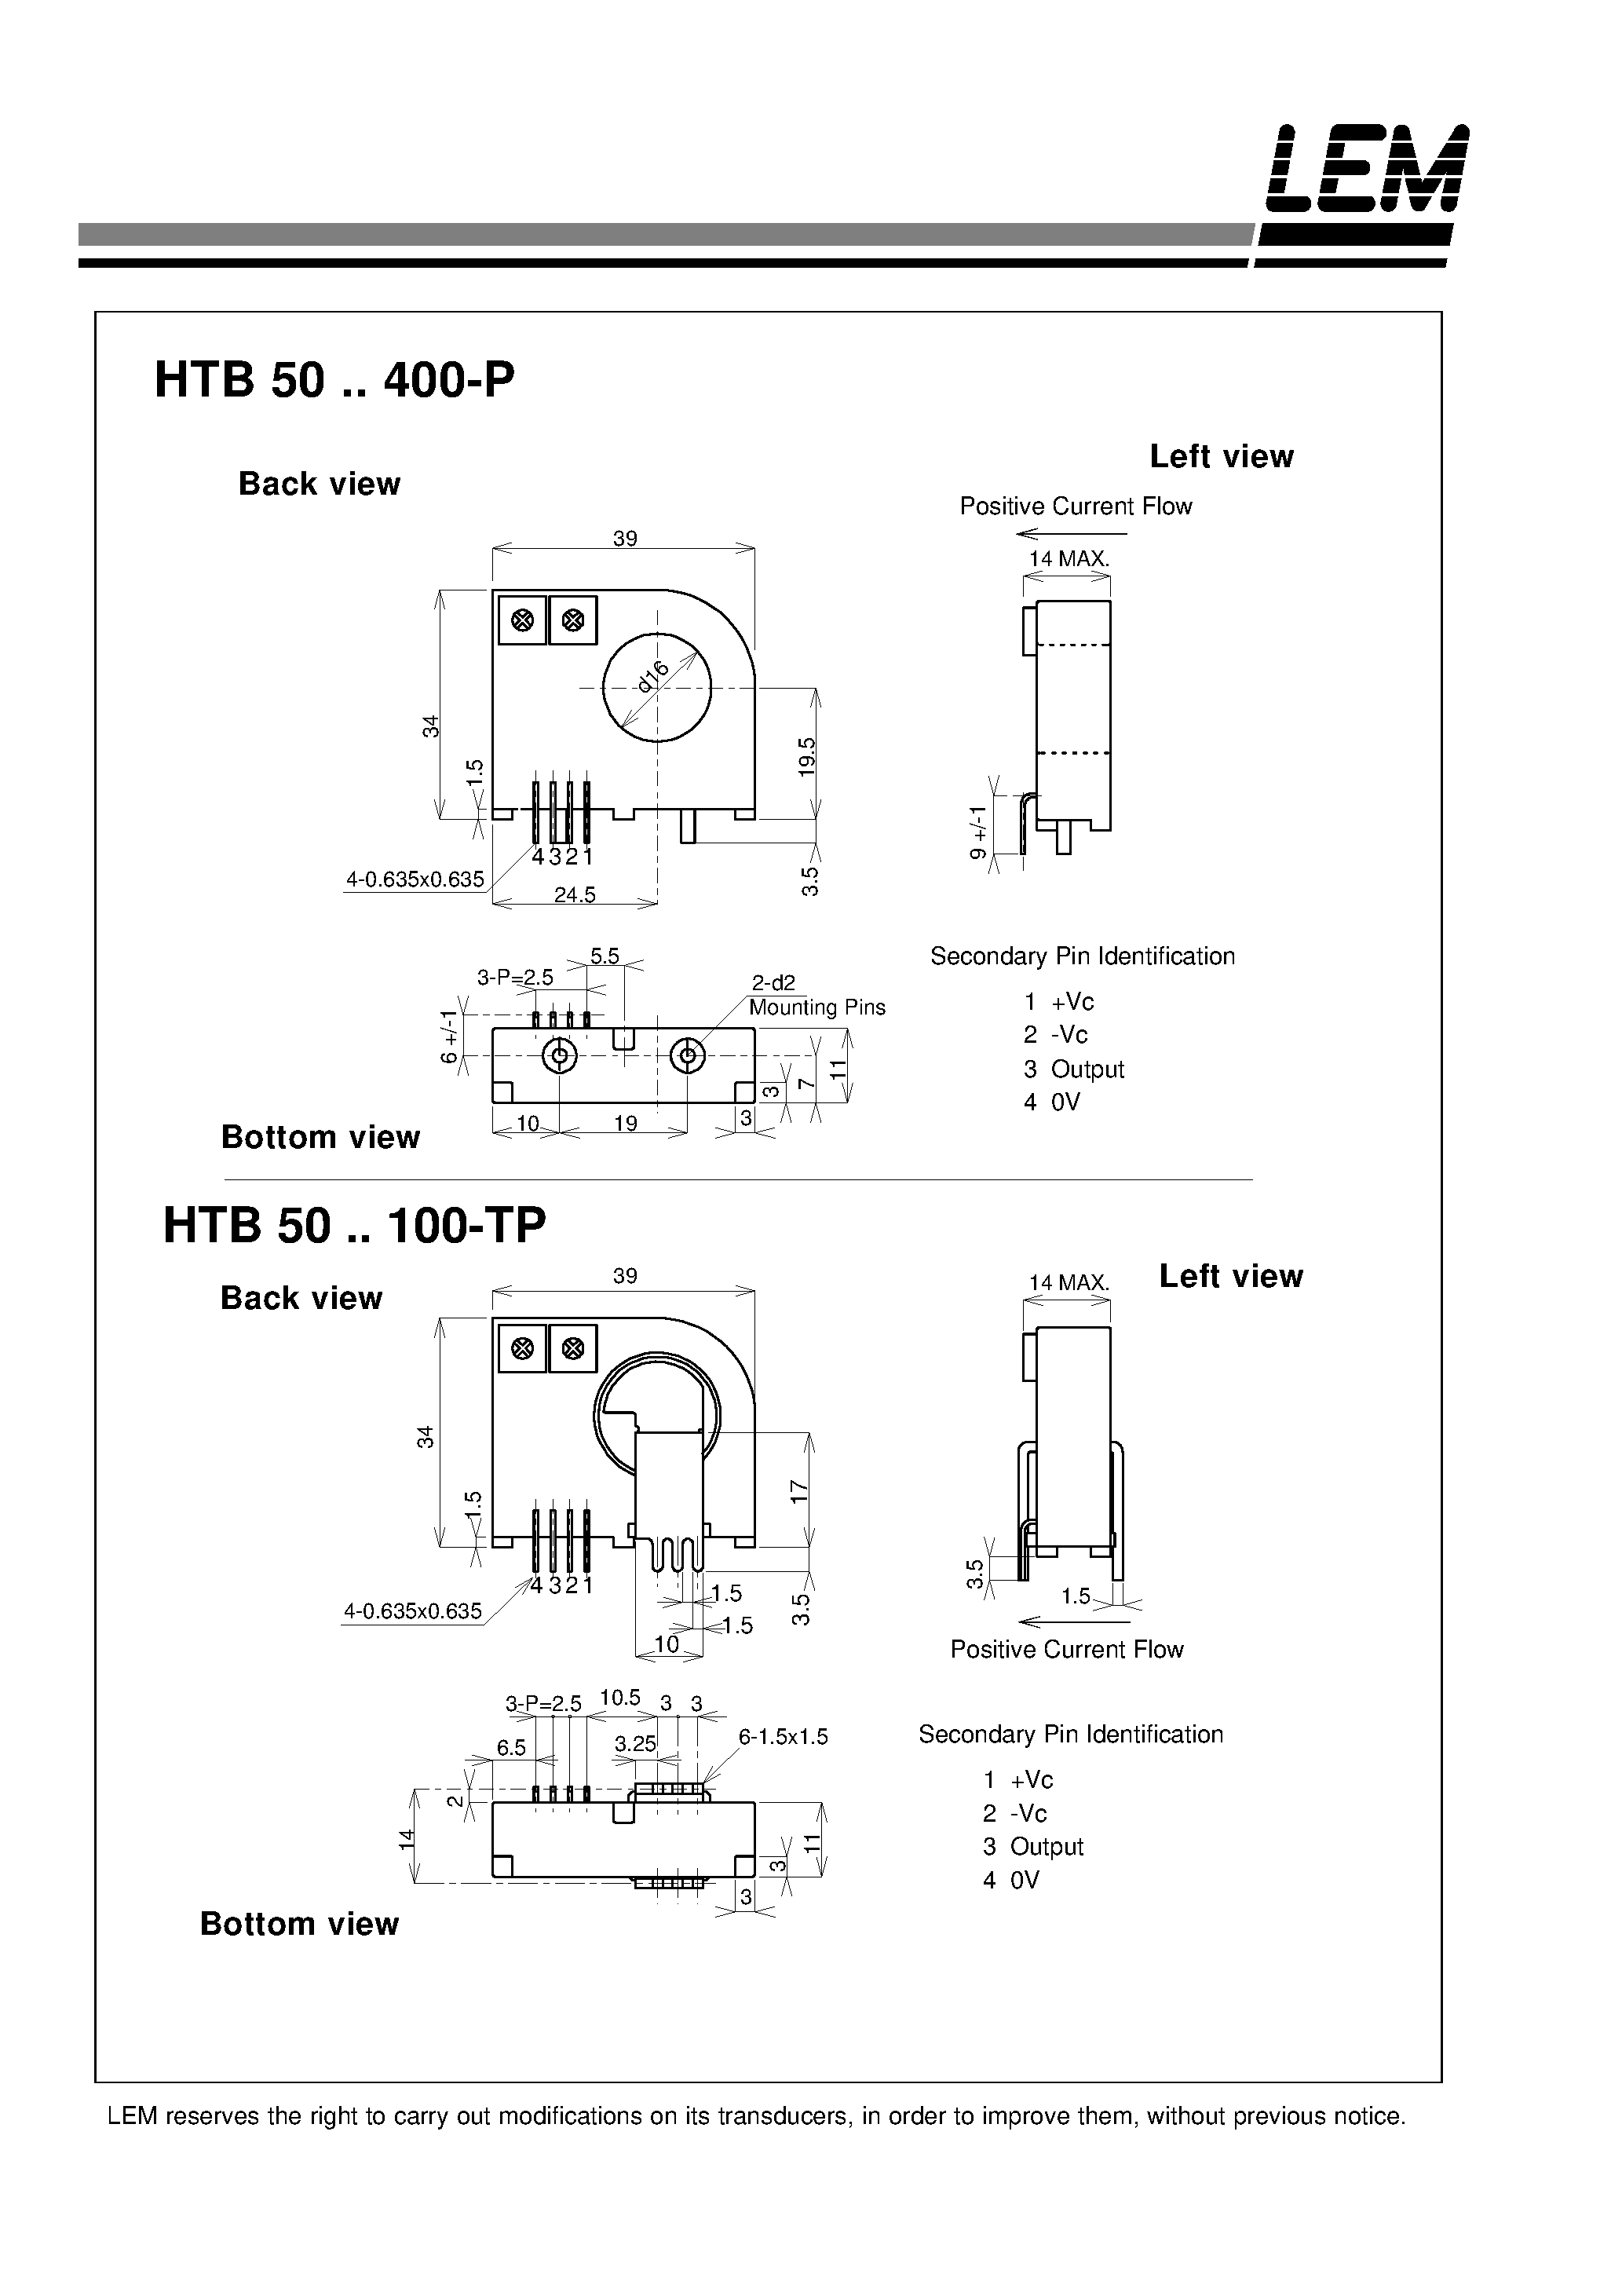 Даташит HTB400-P - Current Transducers HTB 50~400-P and HTB 50~100-TP страница 2